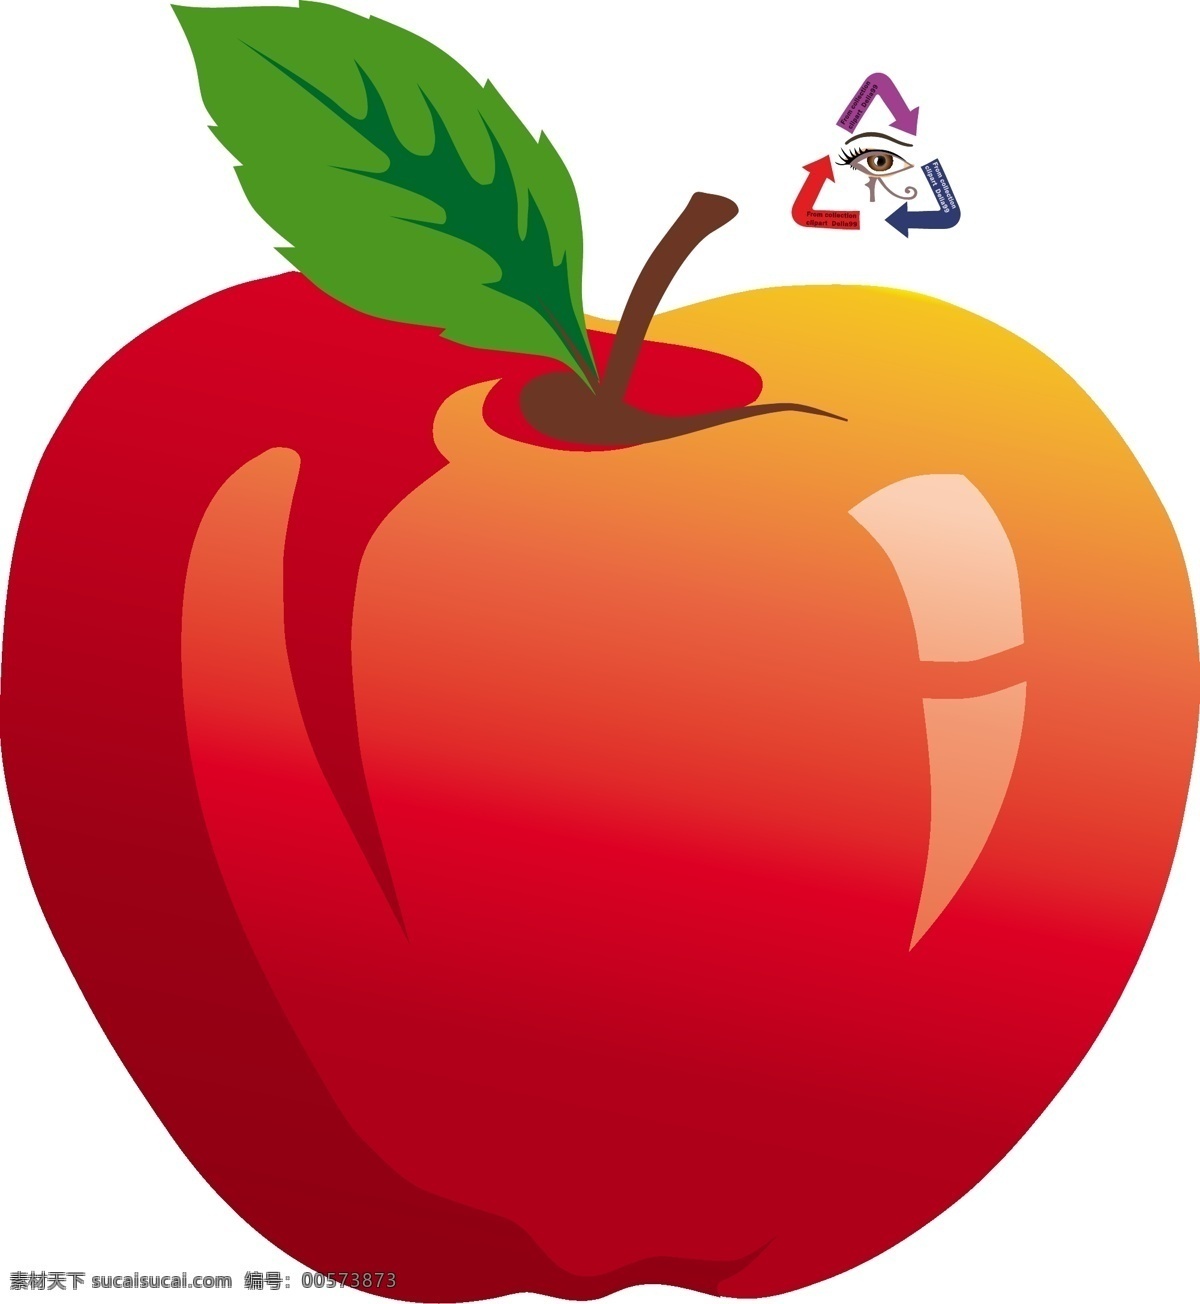 apple 红苹果 农产品 农业 苹果 矢量苹果 矢量图库 水果 矢量 模板下载 水晶苹果 水果店素材 果产 种植业